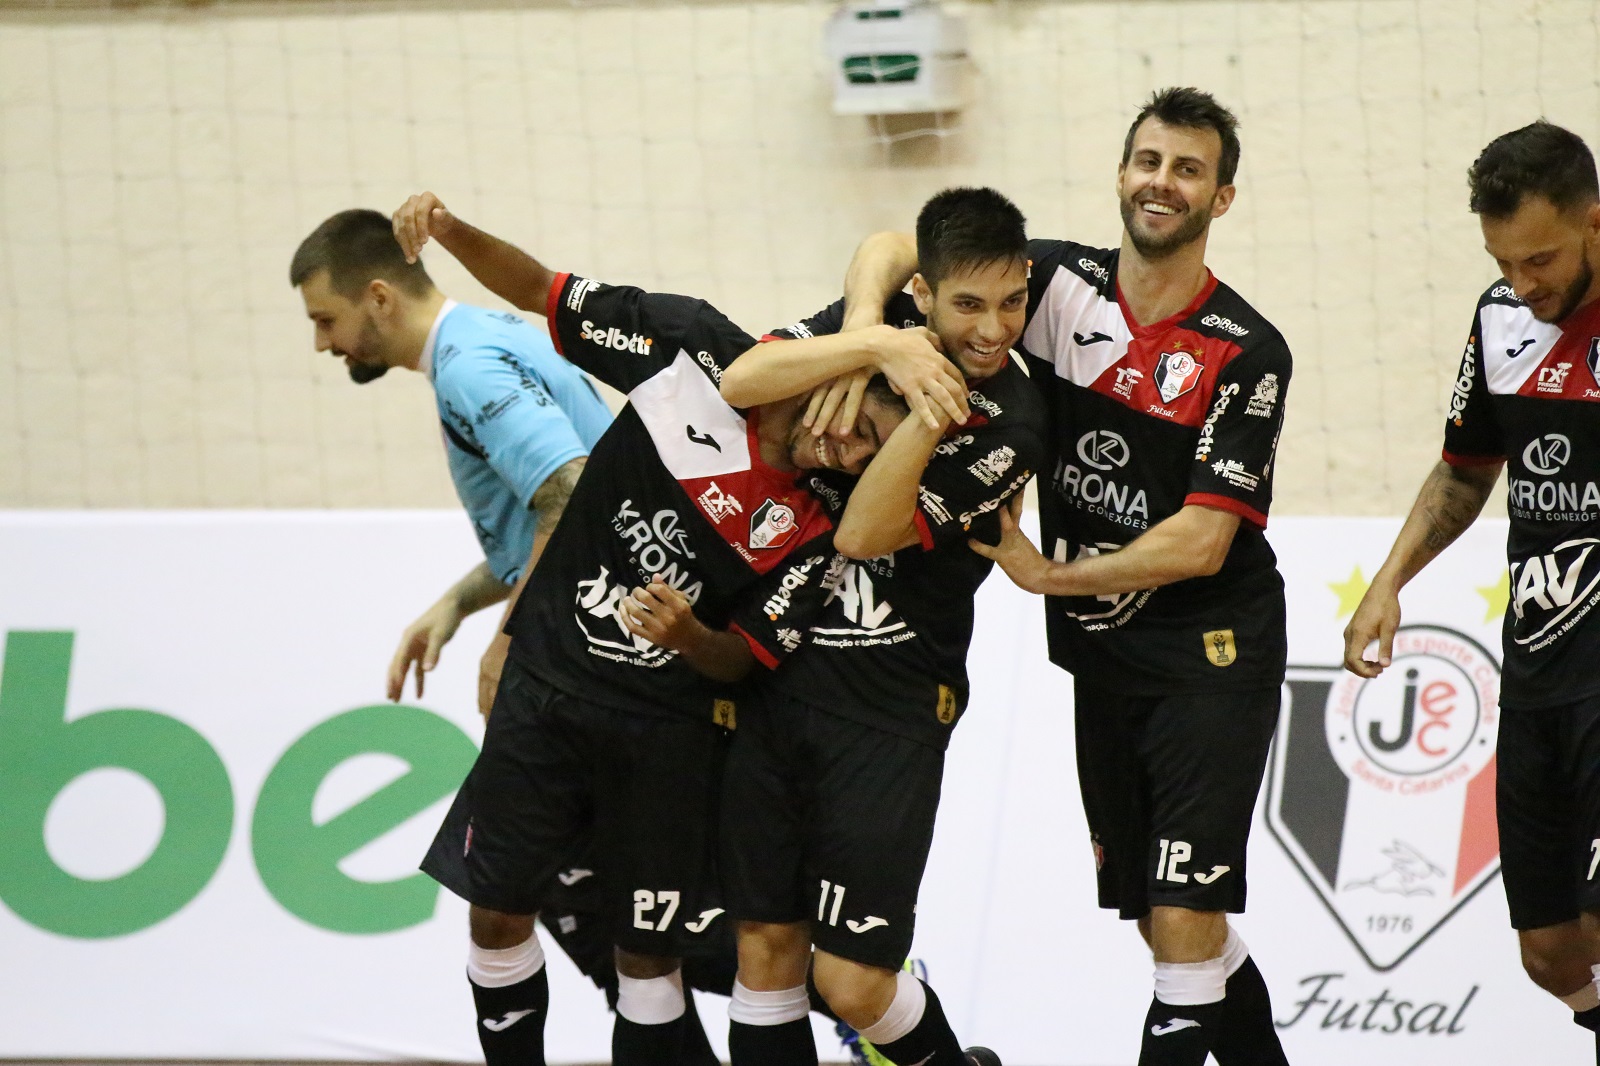 CAMPEÃO! JEC/Krona Futsal conquista a Taça Joma